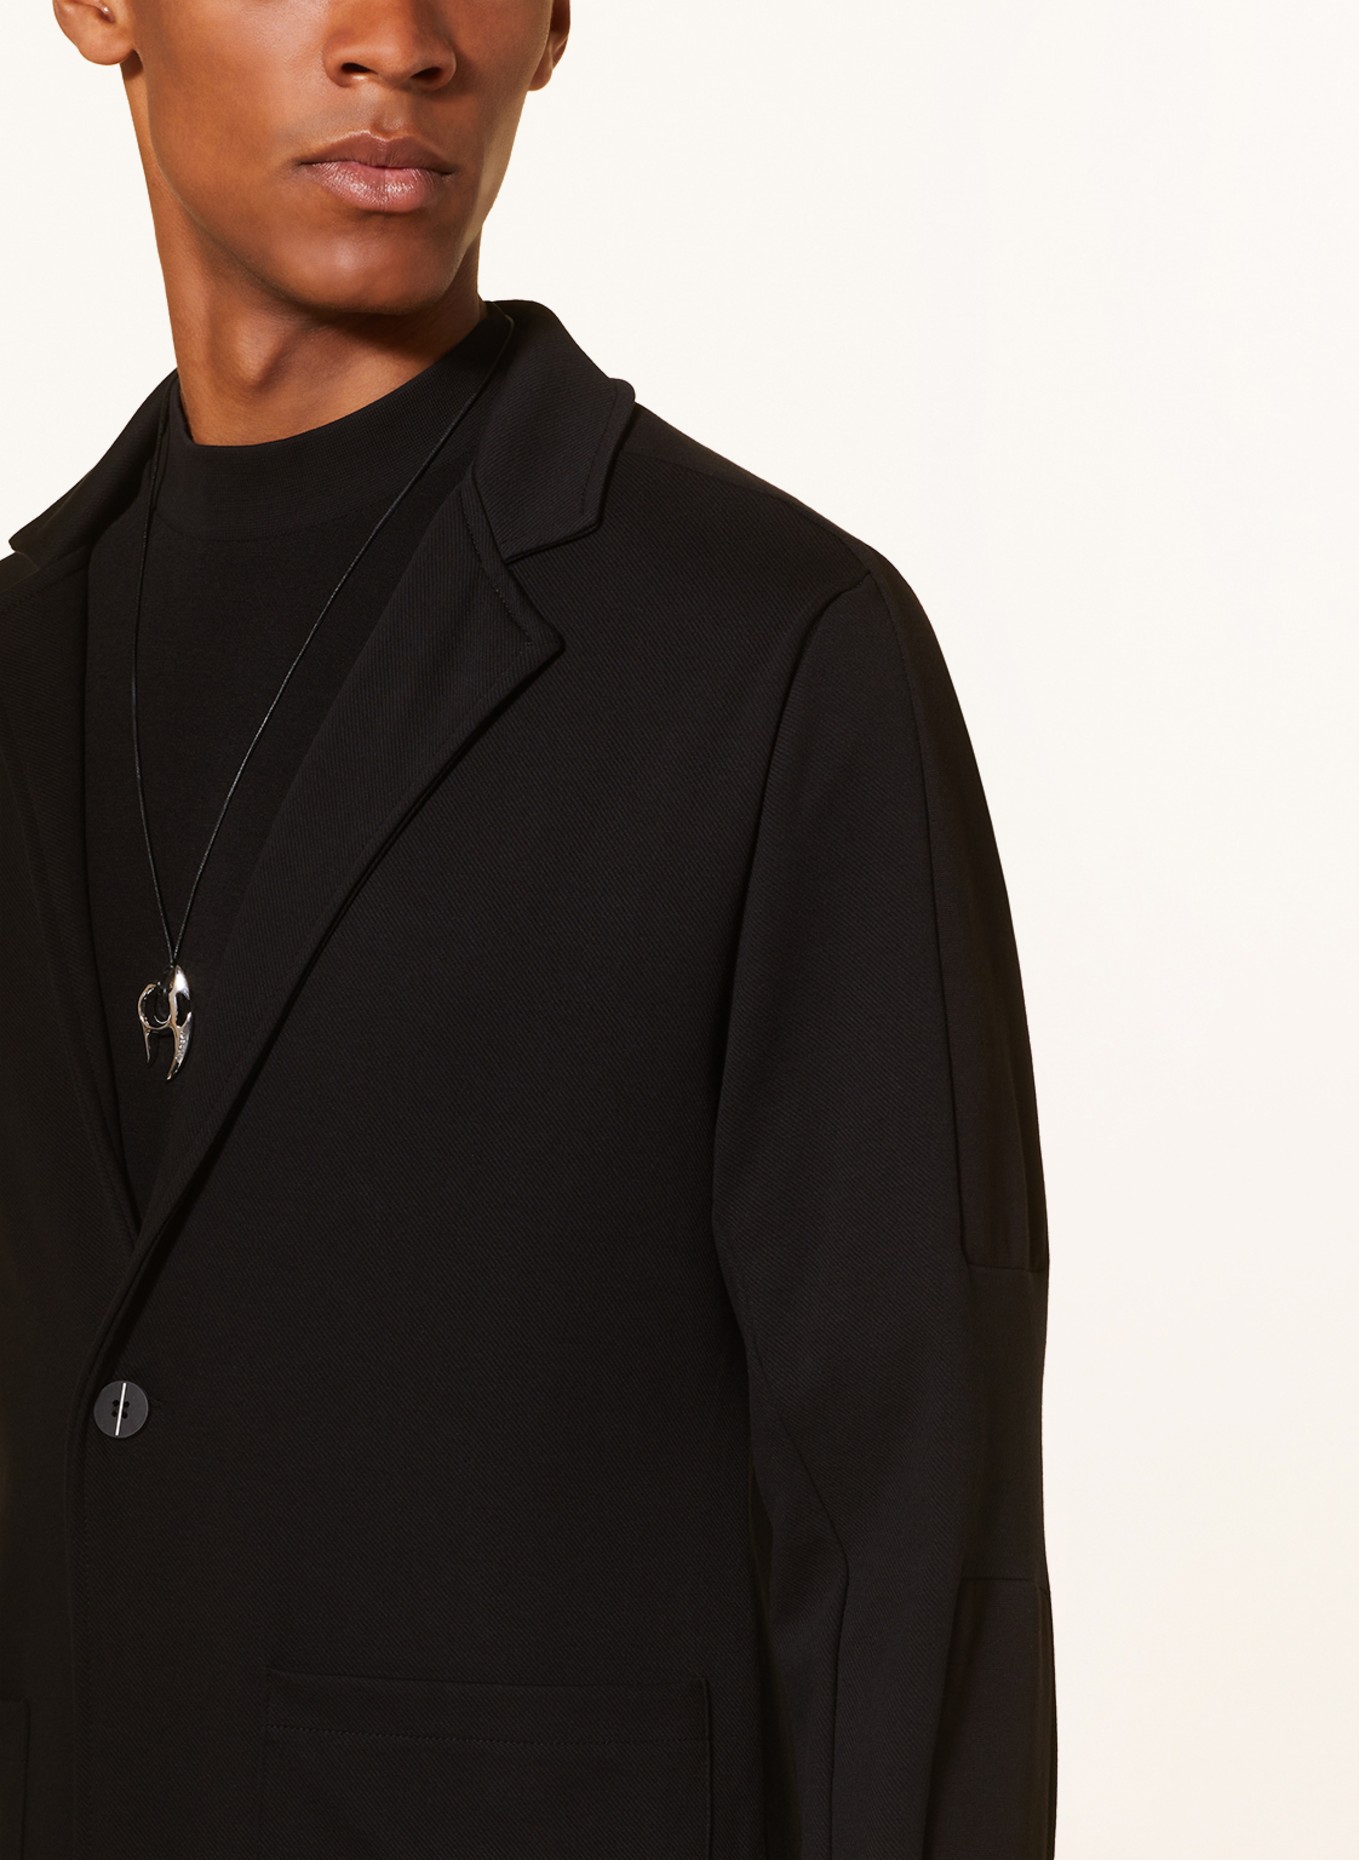 thom/krom Jersey jacket extra slim fit, Color: BLACK (Image 5)